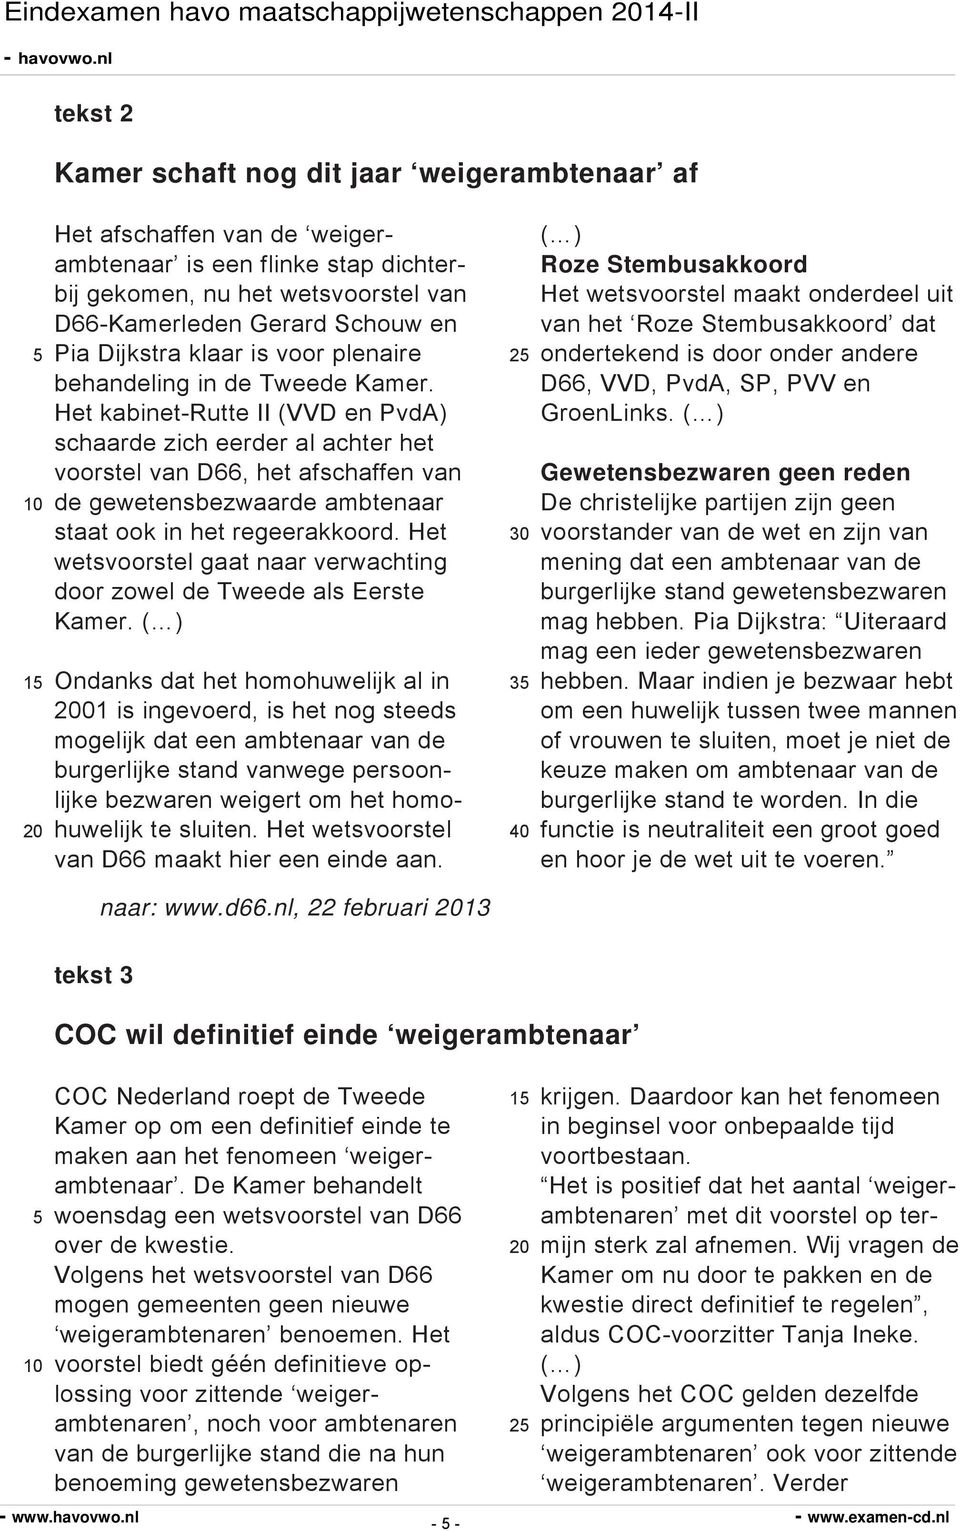 Het kabinet-rutte II (VVD en PvdA) schaarde zich eerder al achter het voorstel van D66, het afschaffen van de gewetensbezwaarde ambtenaar staat ook in het regeerakkoord.